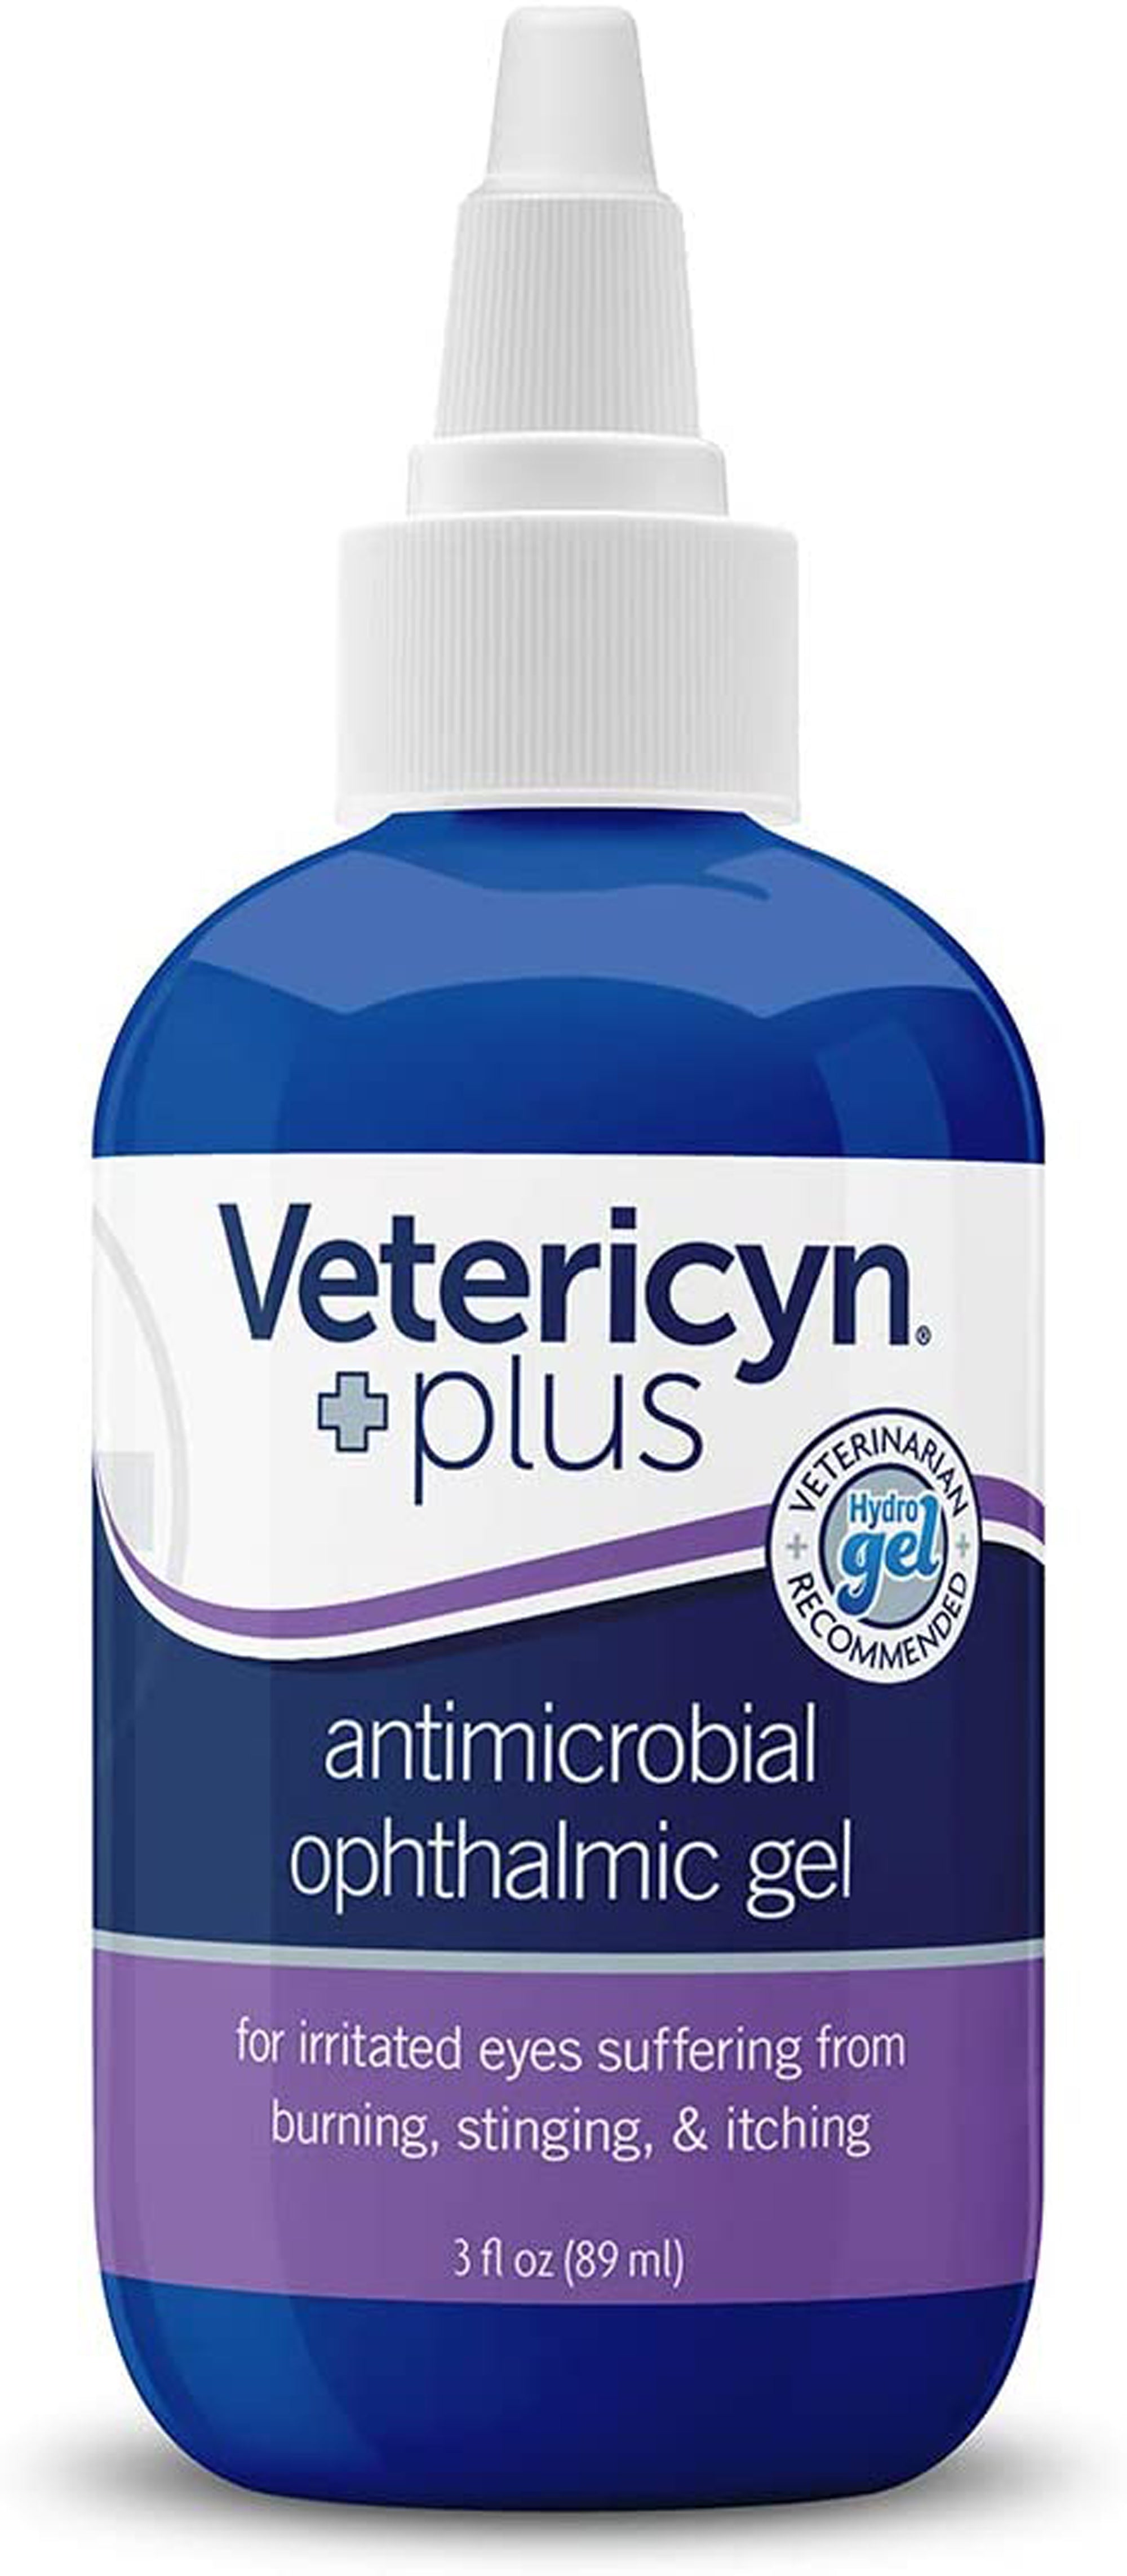 Vetericyn Antimicrobial Ophthalmic Gel 3 fl. oz